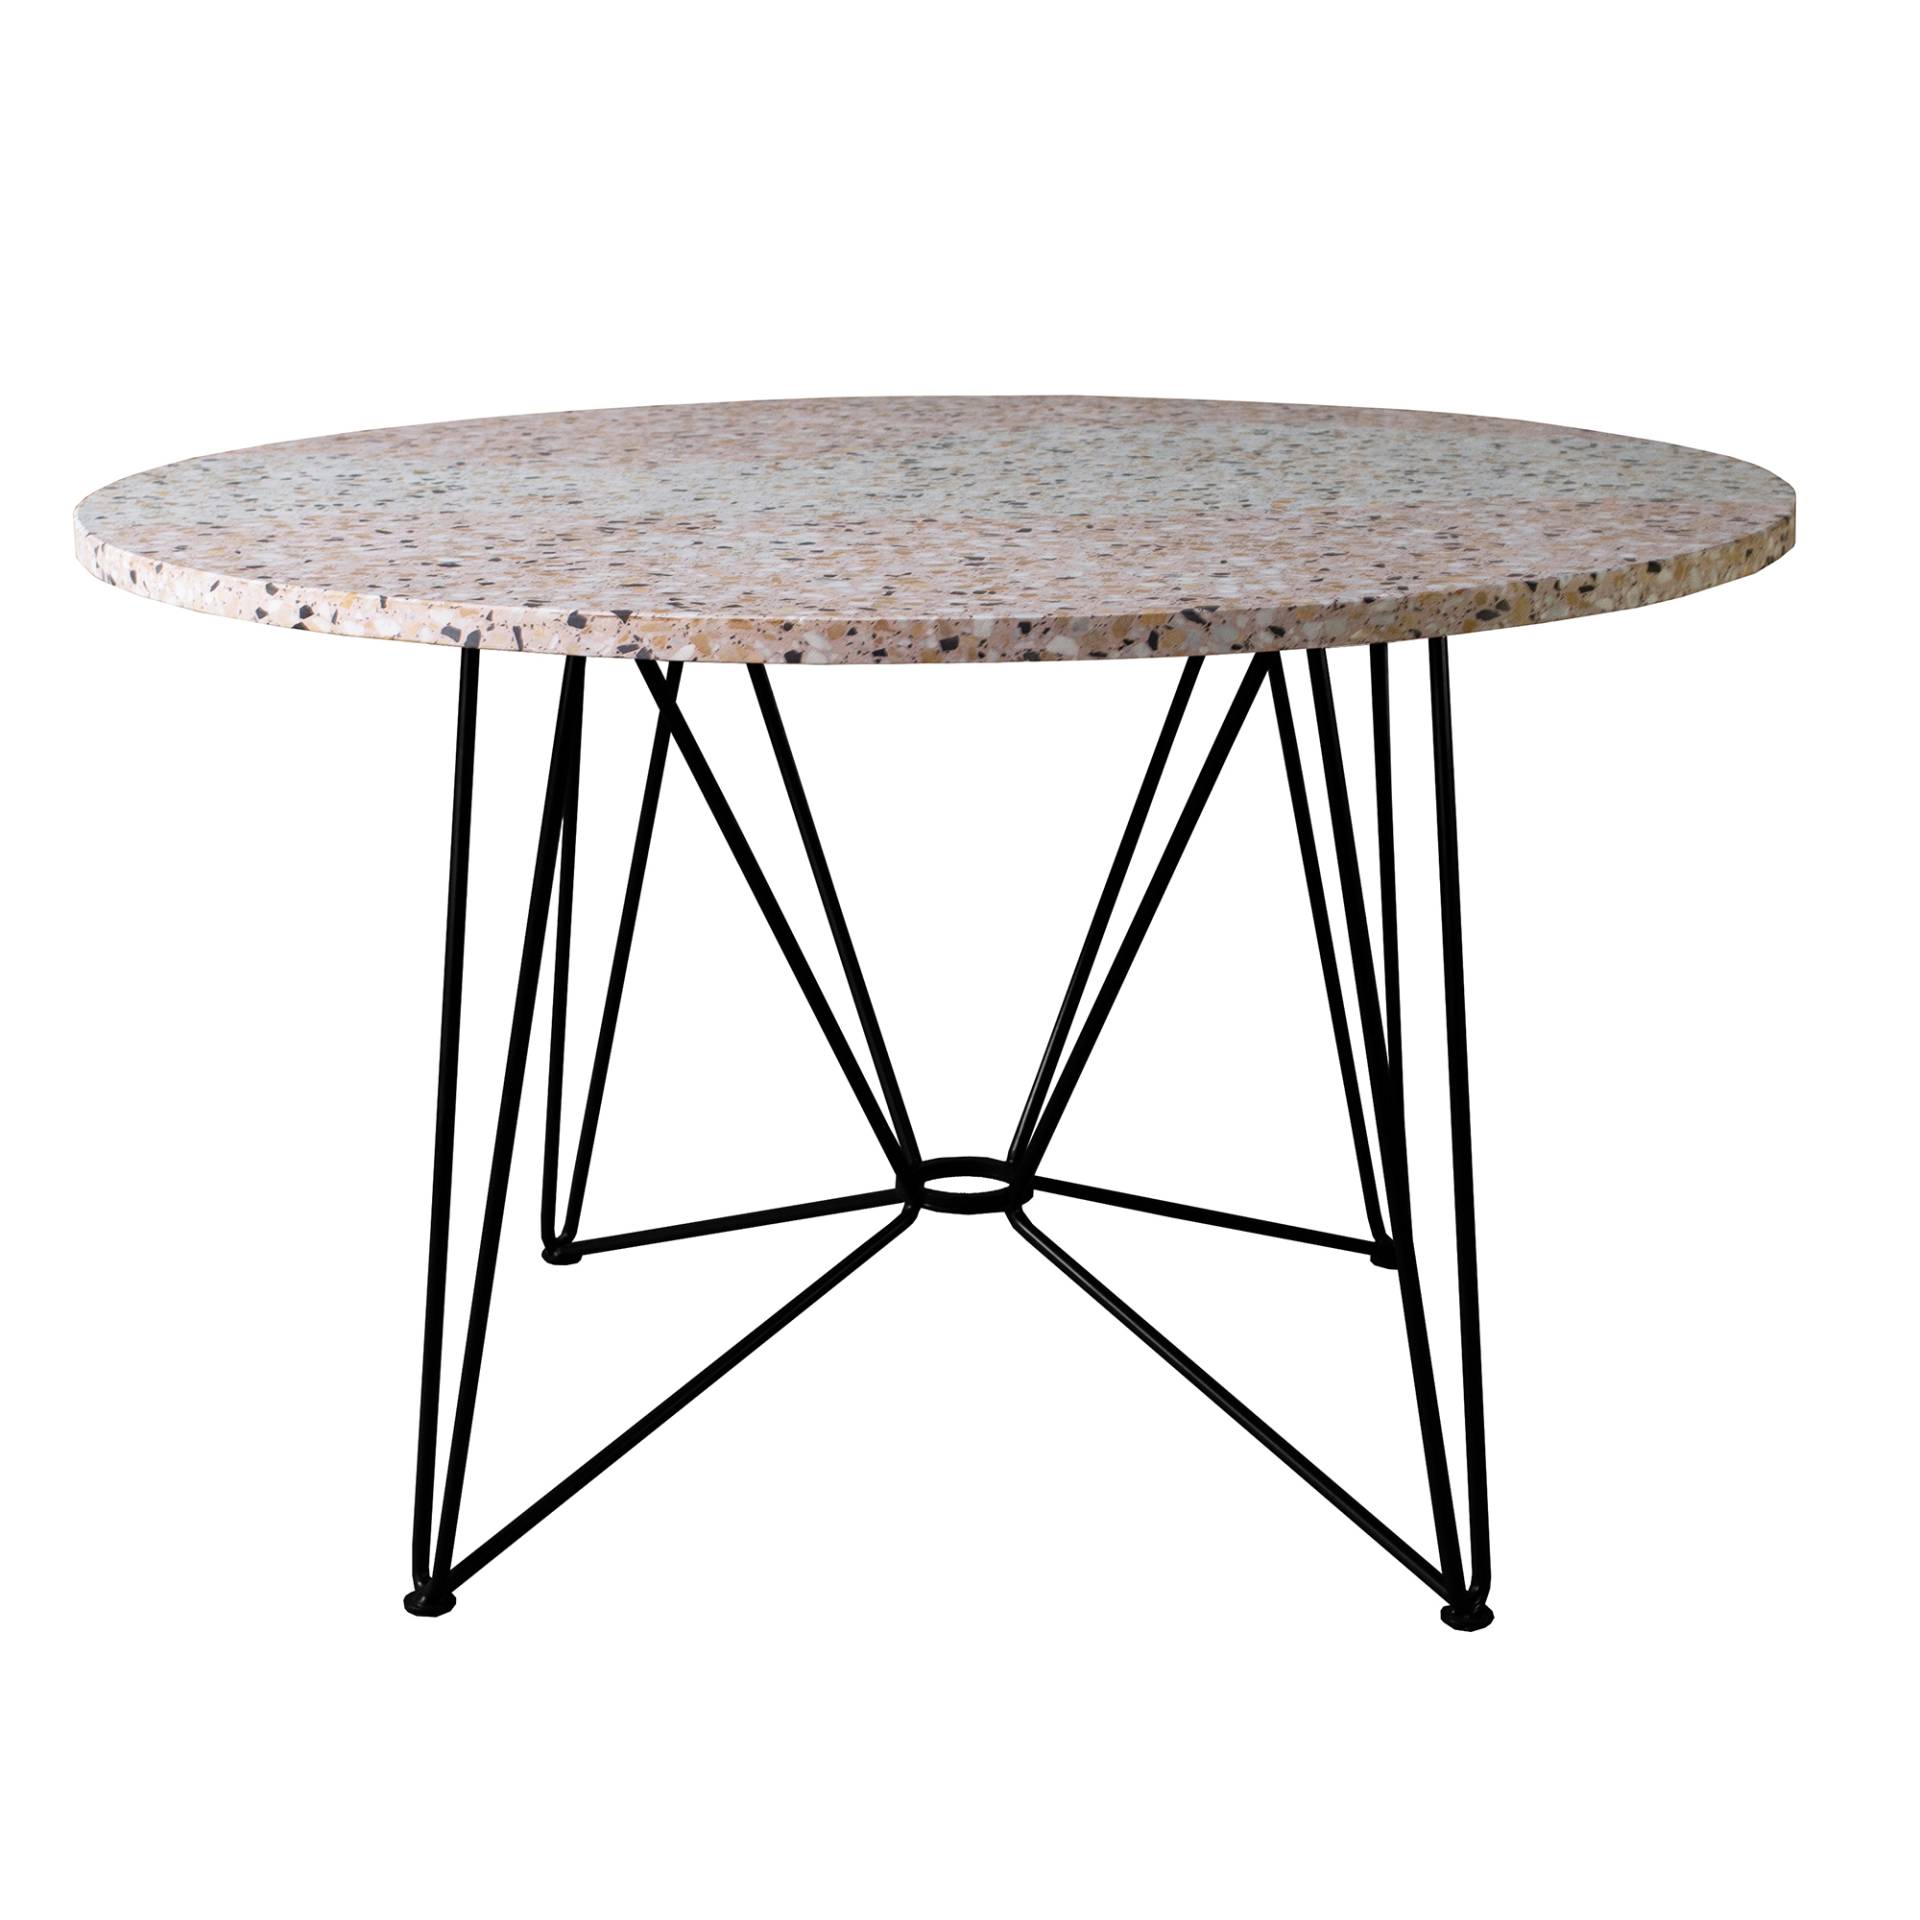 Acapulco Design - The Ring Table Esstisch Terrazzo Ø120cm - terrazzo , schwarz/Tischplatte Furnier/Gestell Stahl pulverbeschichtet/HxØ 74x120cm von Acapulco Design